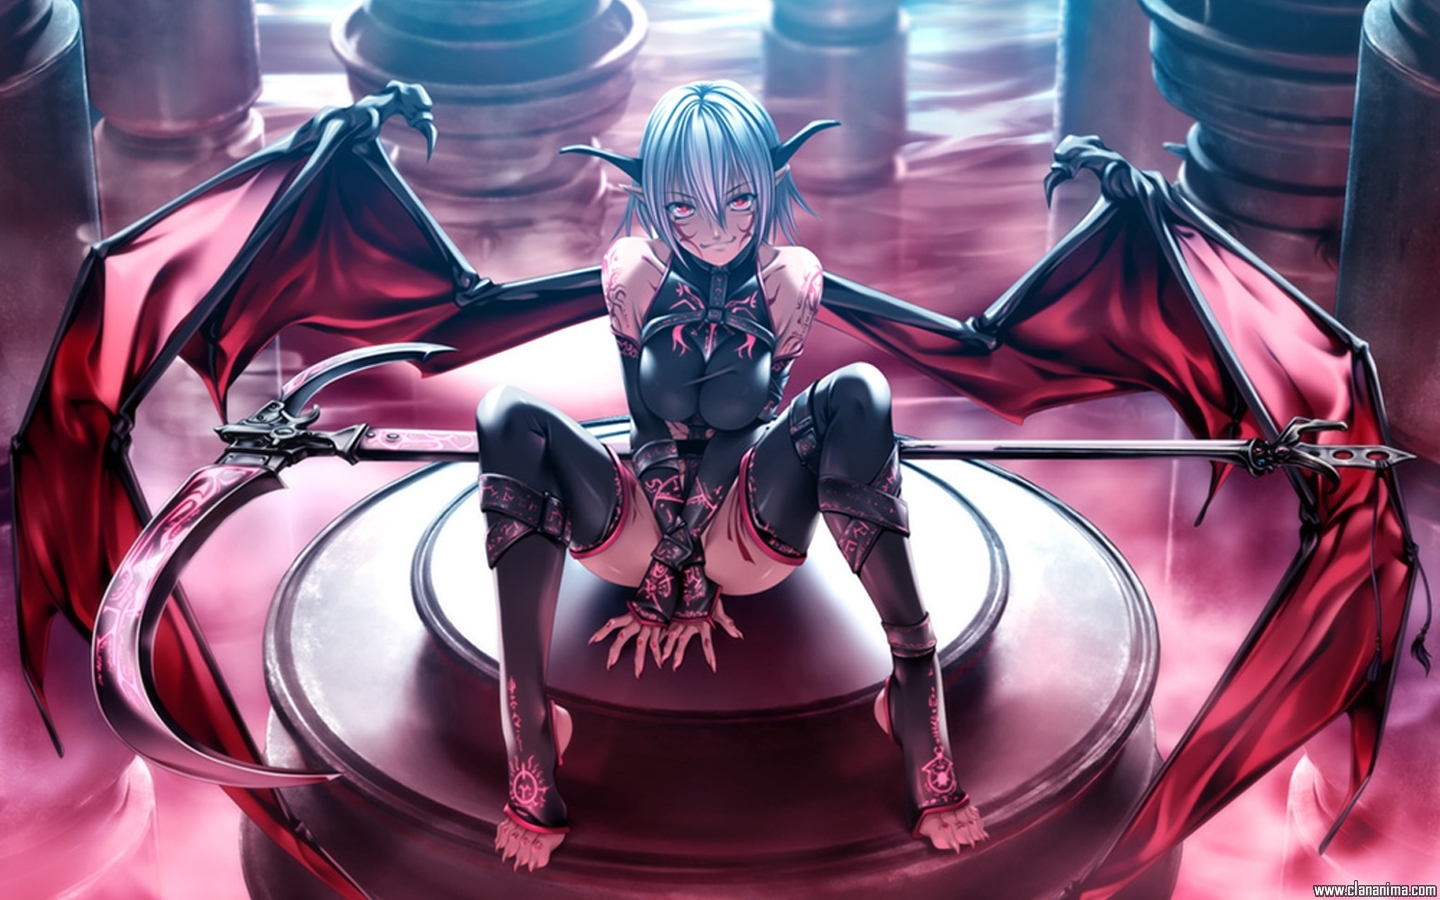 Demon Anime Girl - 1440x900 Wallpaper 